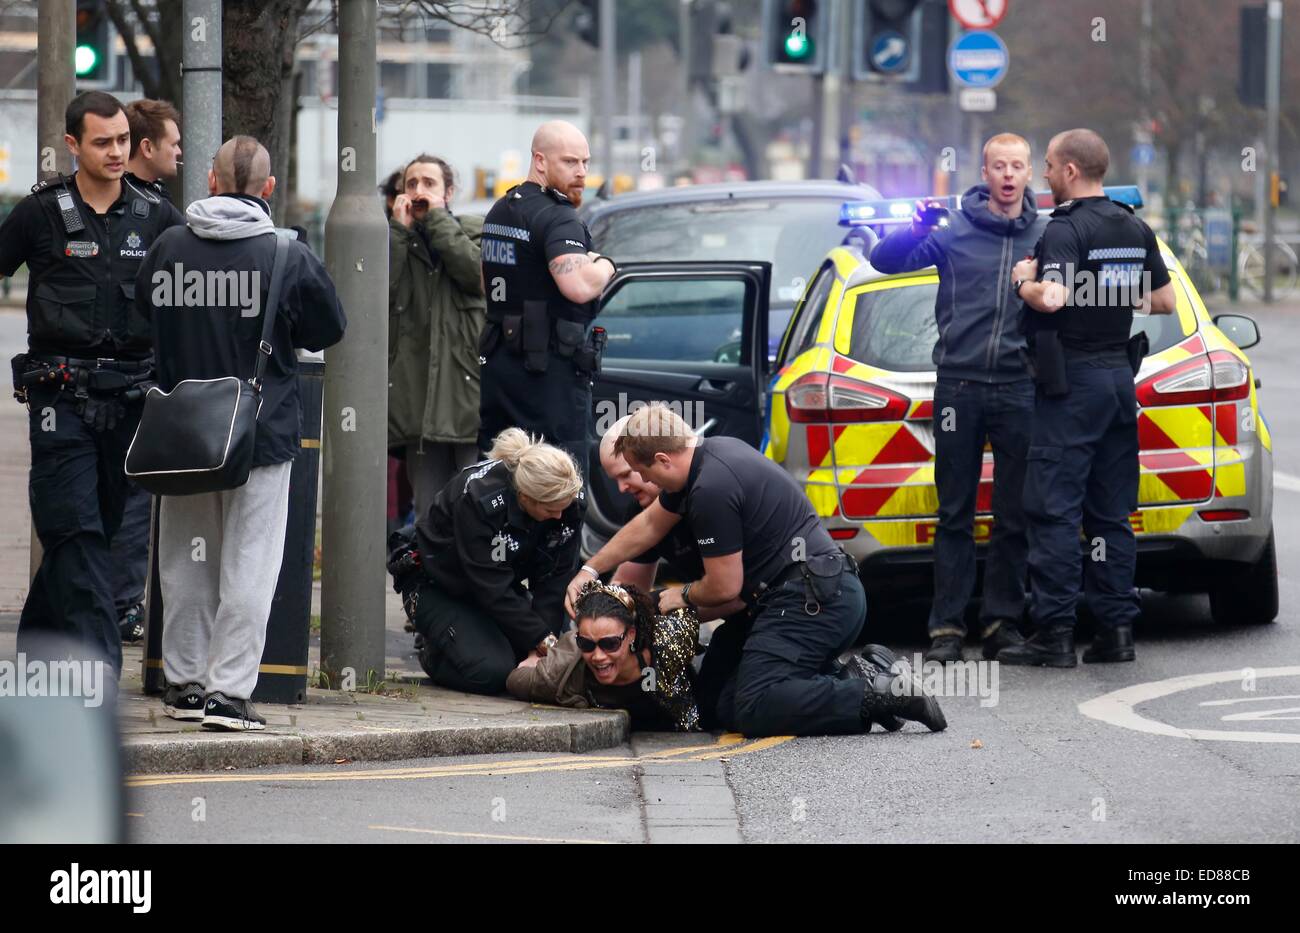 Una donna è trattenuta e arrestata dalla polizia per essere ubriaca e disordinata. 1 gennaio 2015 (esito dell'arresto sconosciuto) immagine di James Boardman. Foto Stock